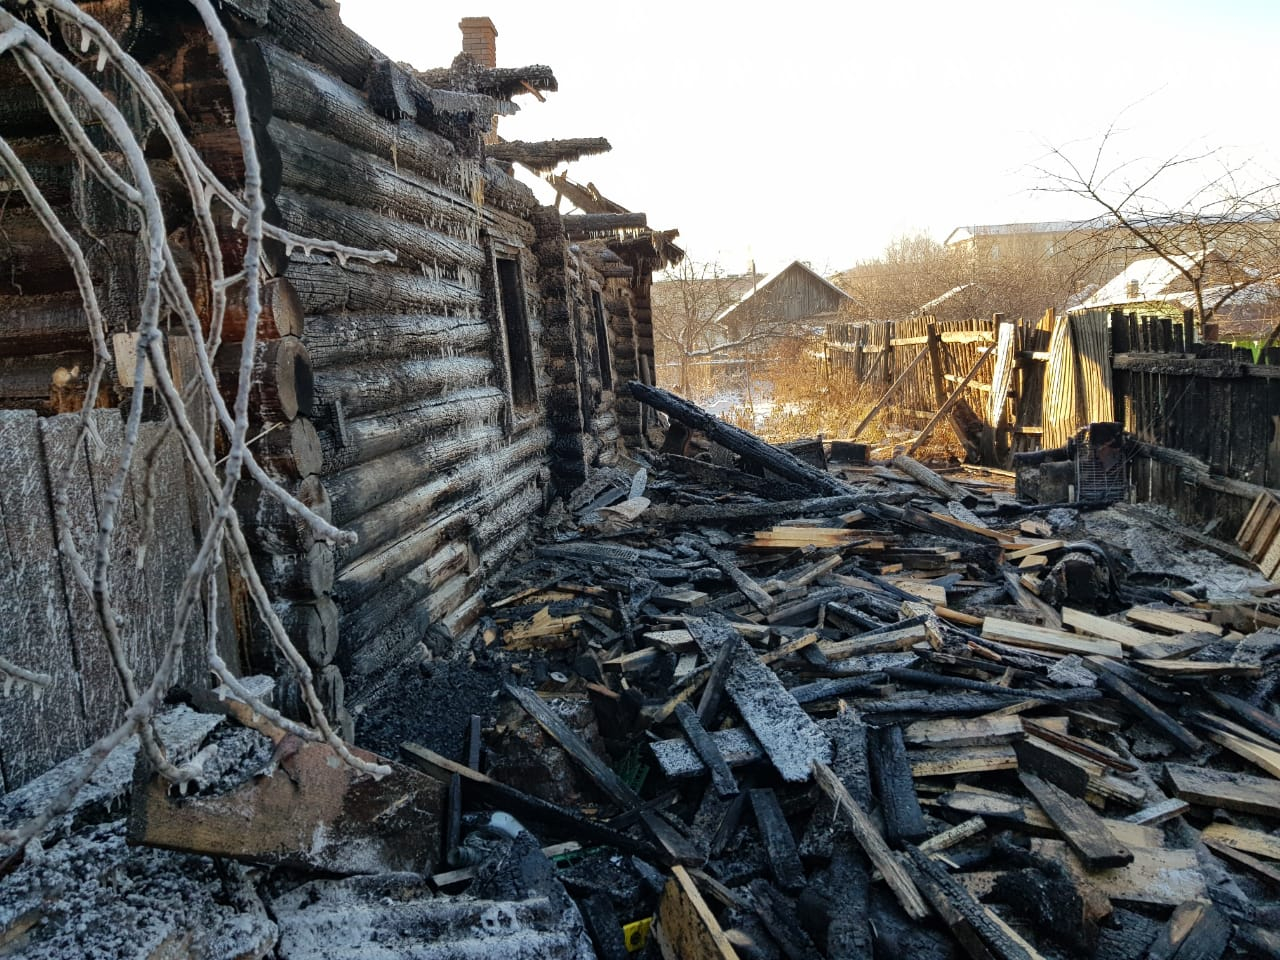 Сгорела заживо: в МЧС рассказали подробности смертельного пожара в Йошкар-Оле